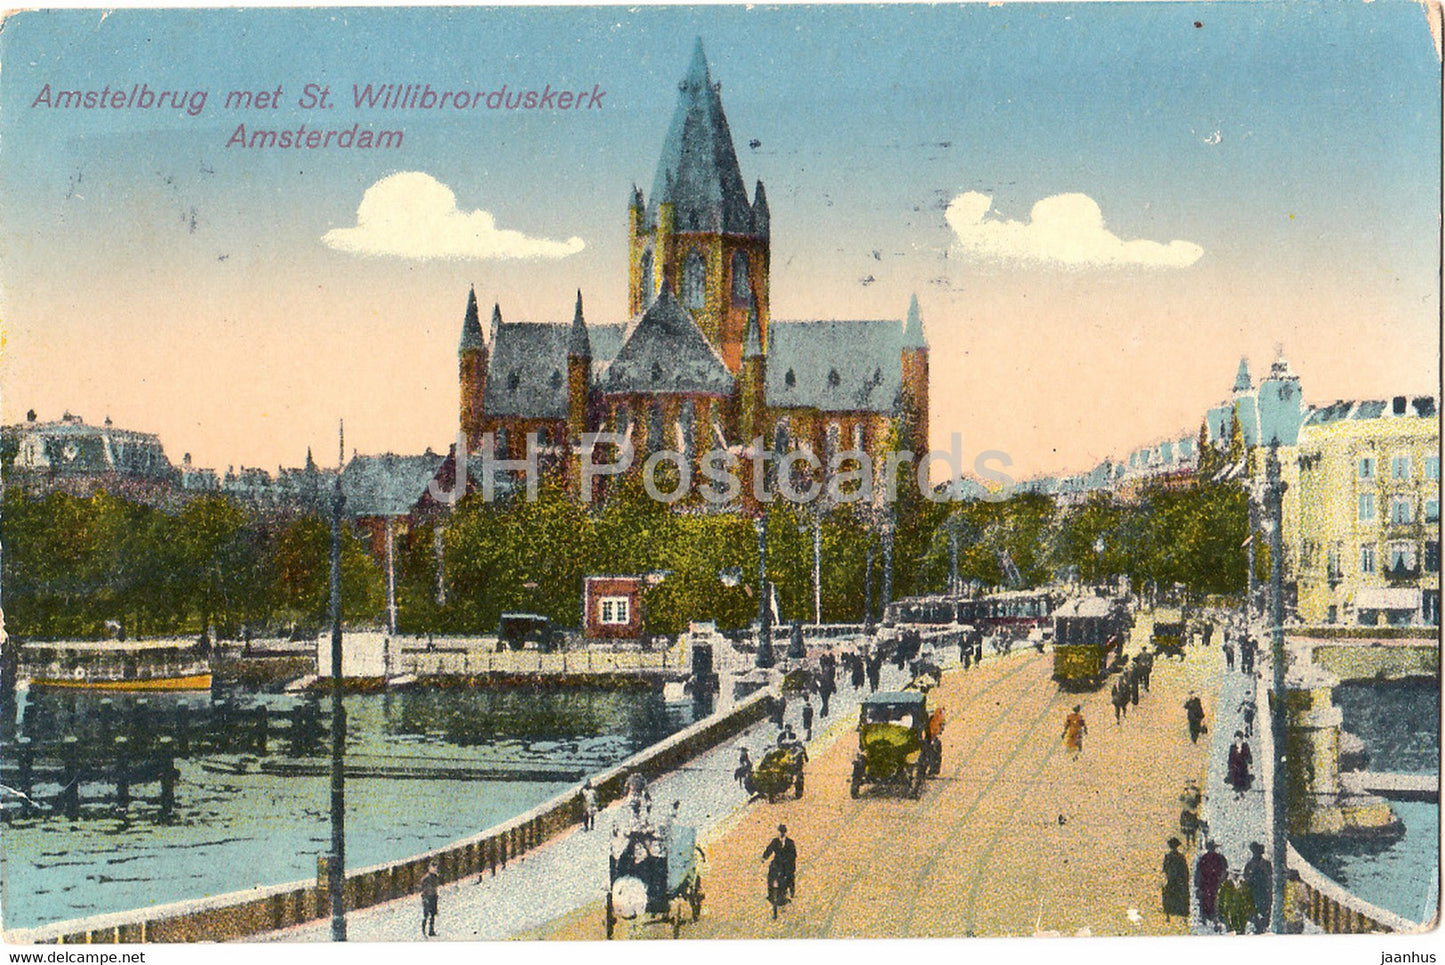 Amsterdam - Amstelbrug met St Willibrorduskerk - tram - 35 - old postcard - Netherlands - used - JH Postcards